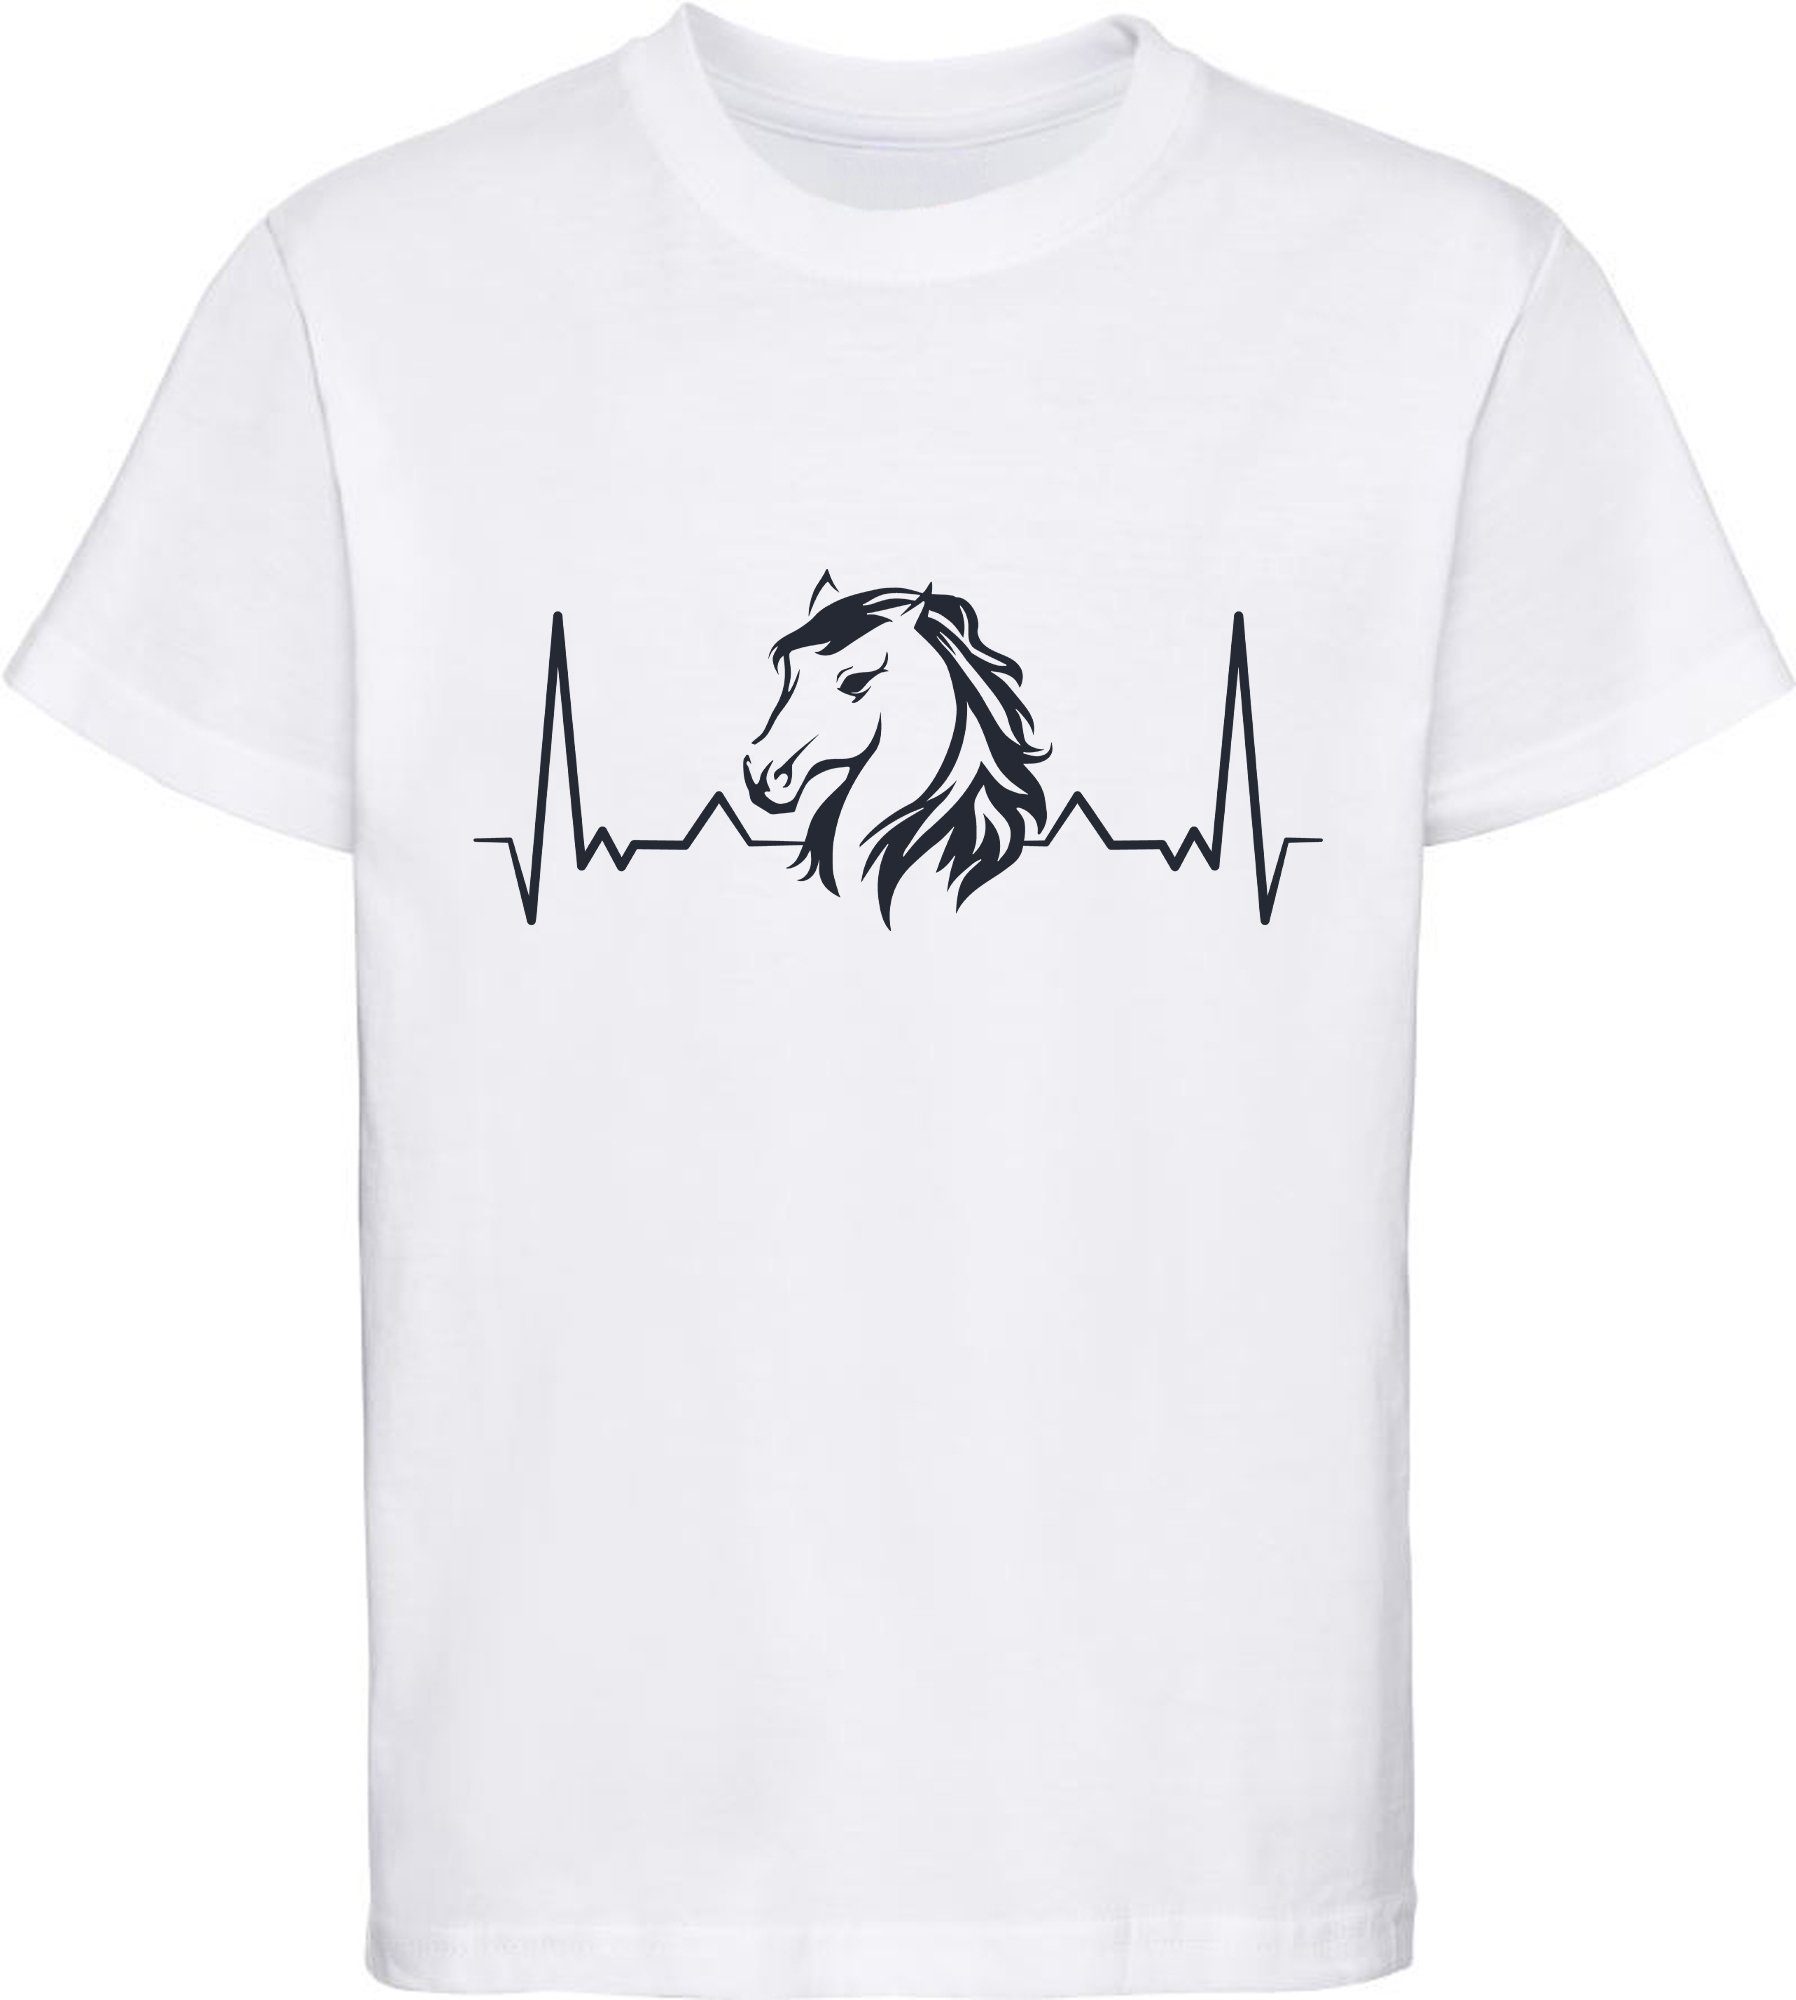 MyDesign24 Print-Shirt bedrucktes Mädchen T-Shirt Herzschlaglinie mit Pferdekopf Baumwollshirt mit Aufdruck, i143 weiss